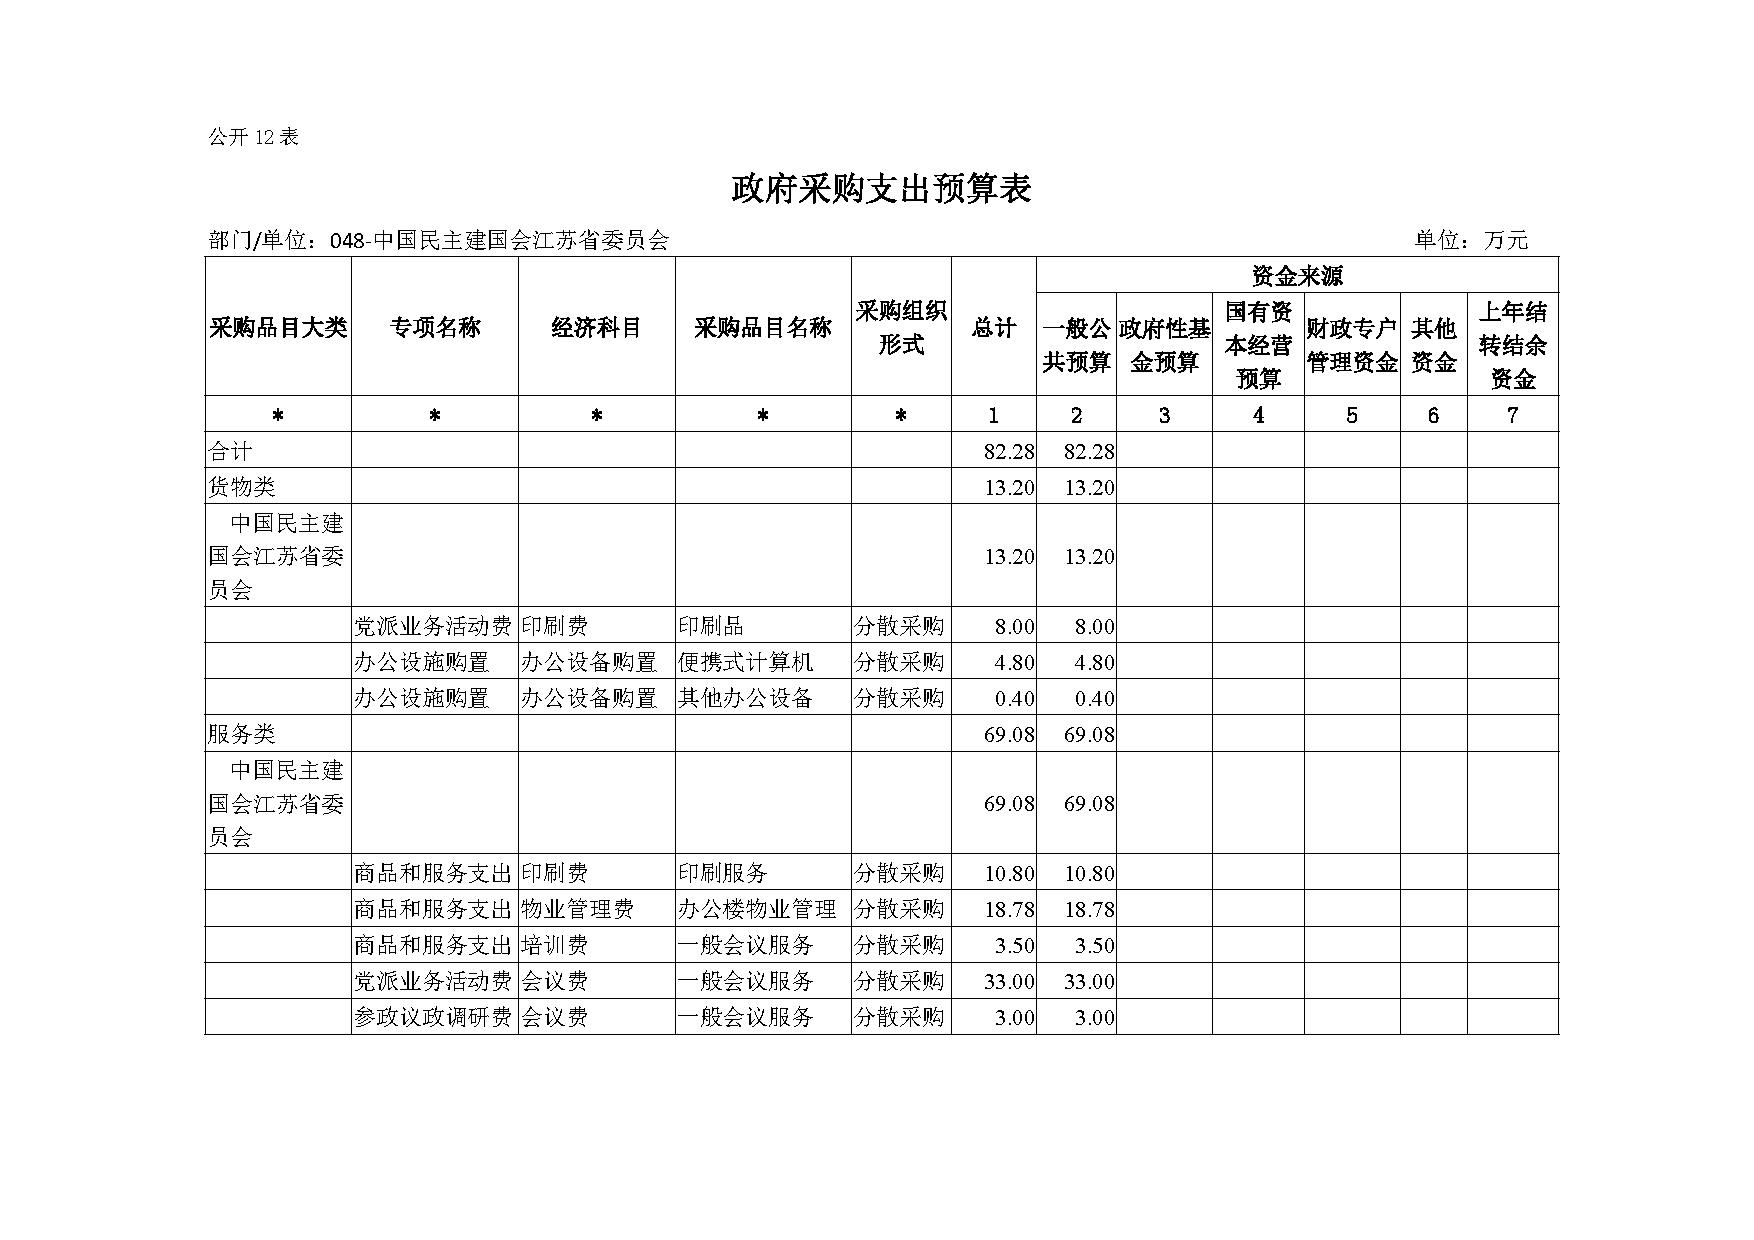 2021年度中国民主建国会江苏省委员会部门预算公开-20.jpg